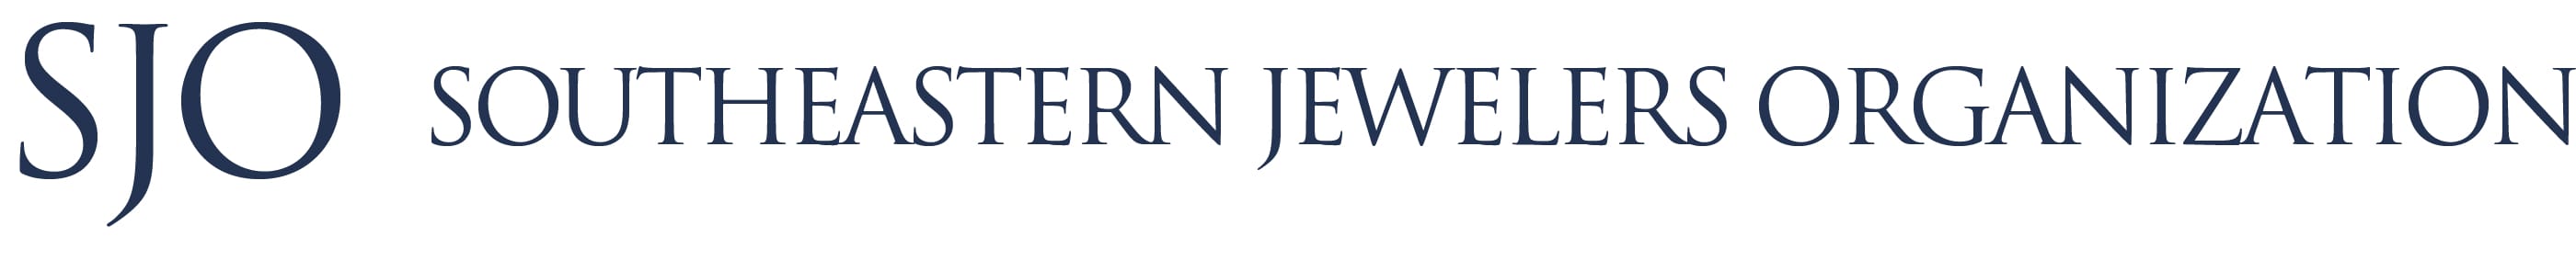 SJO - Southeastern Jewelers Organization